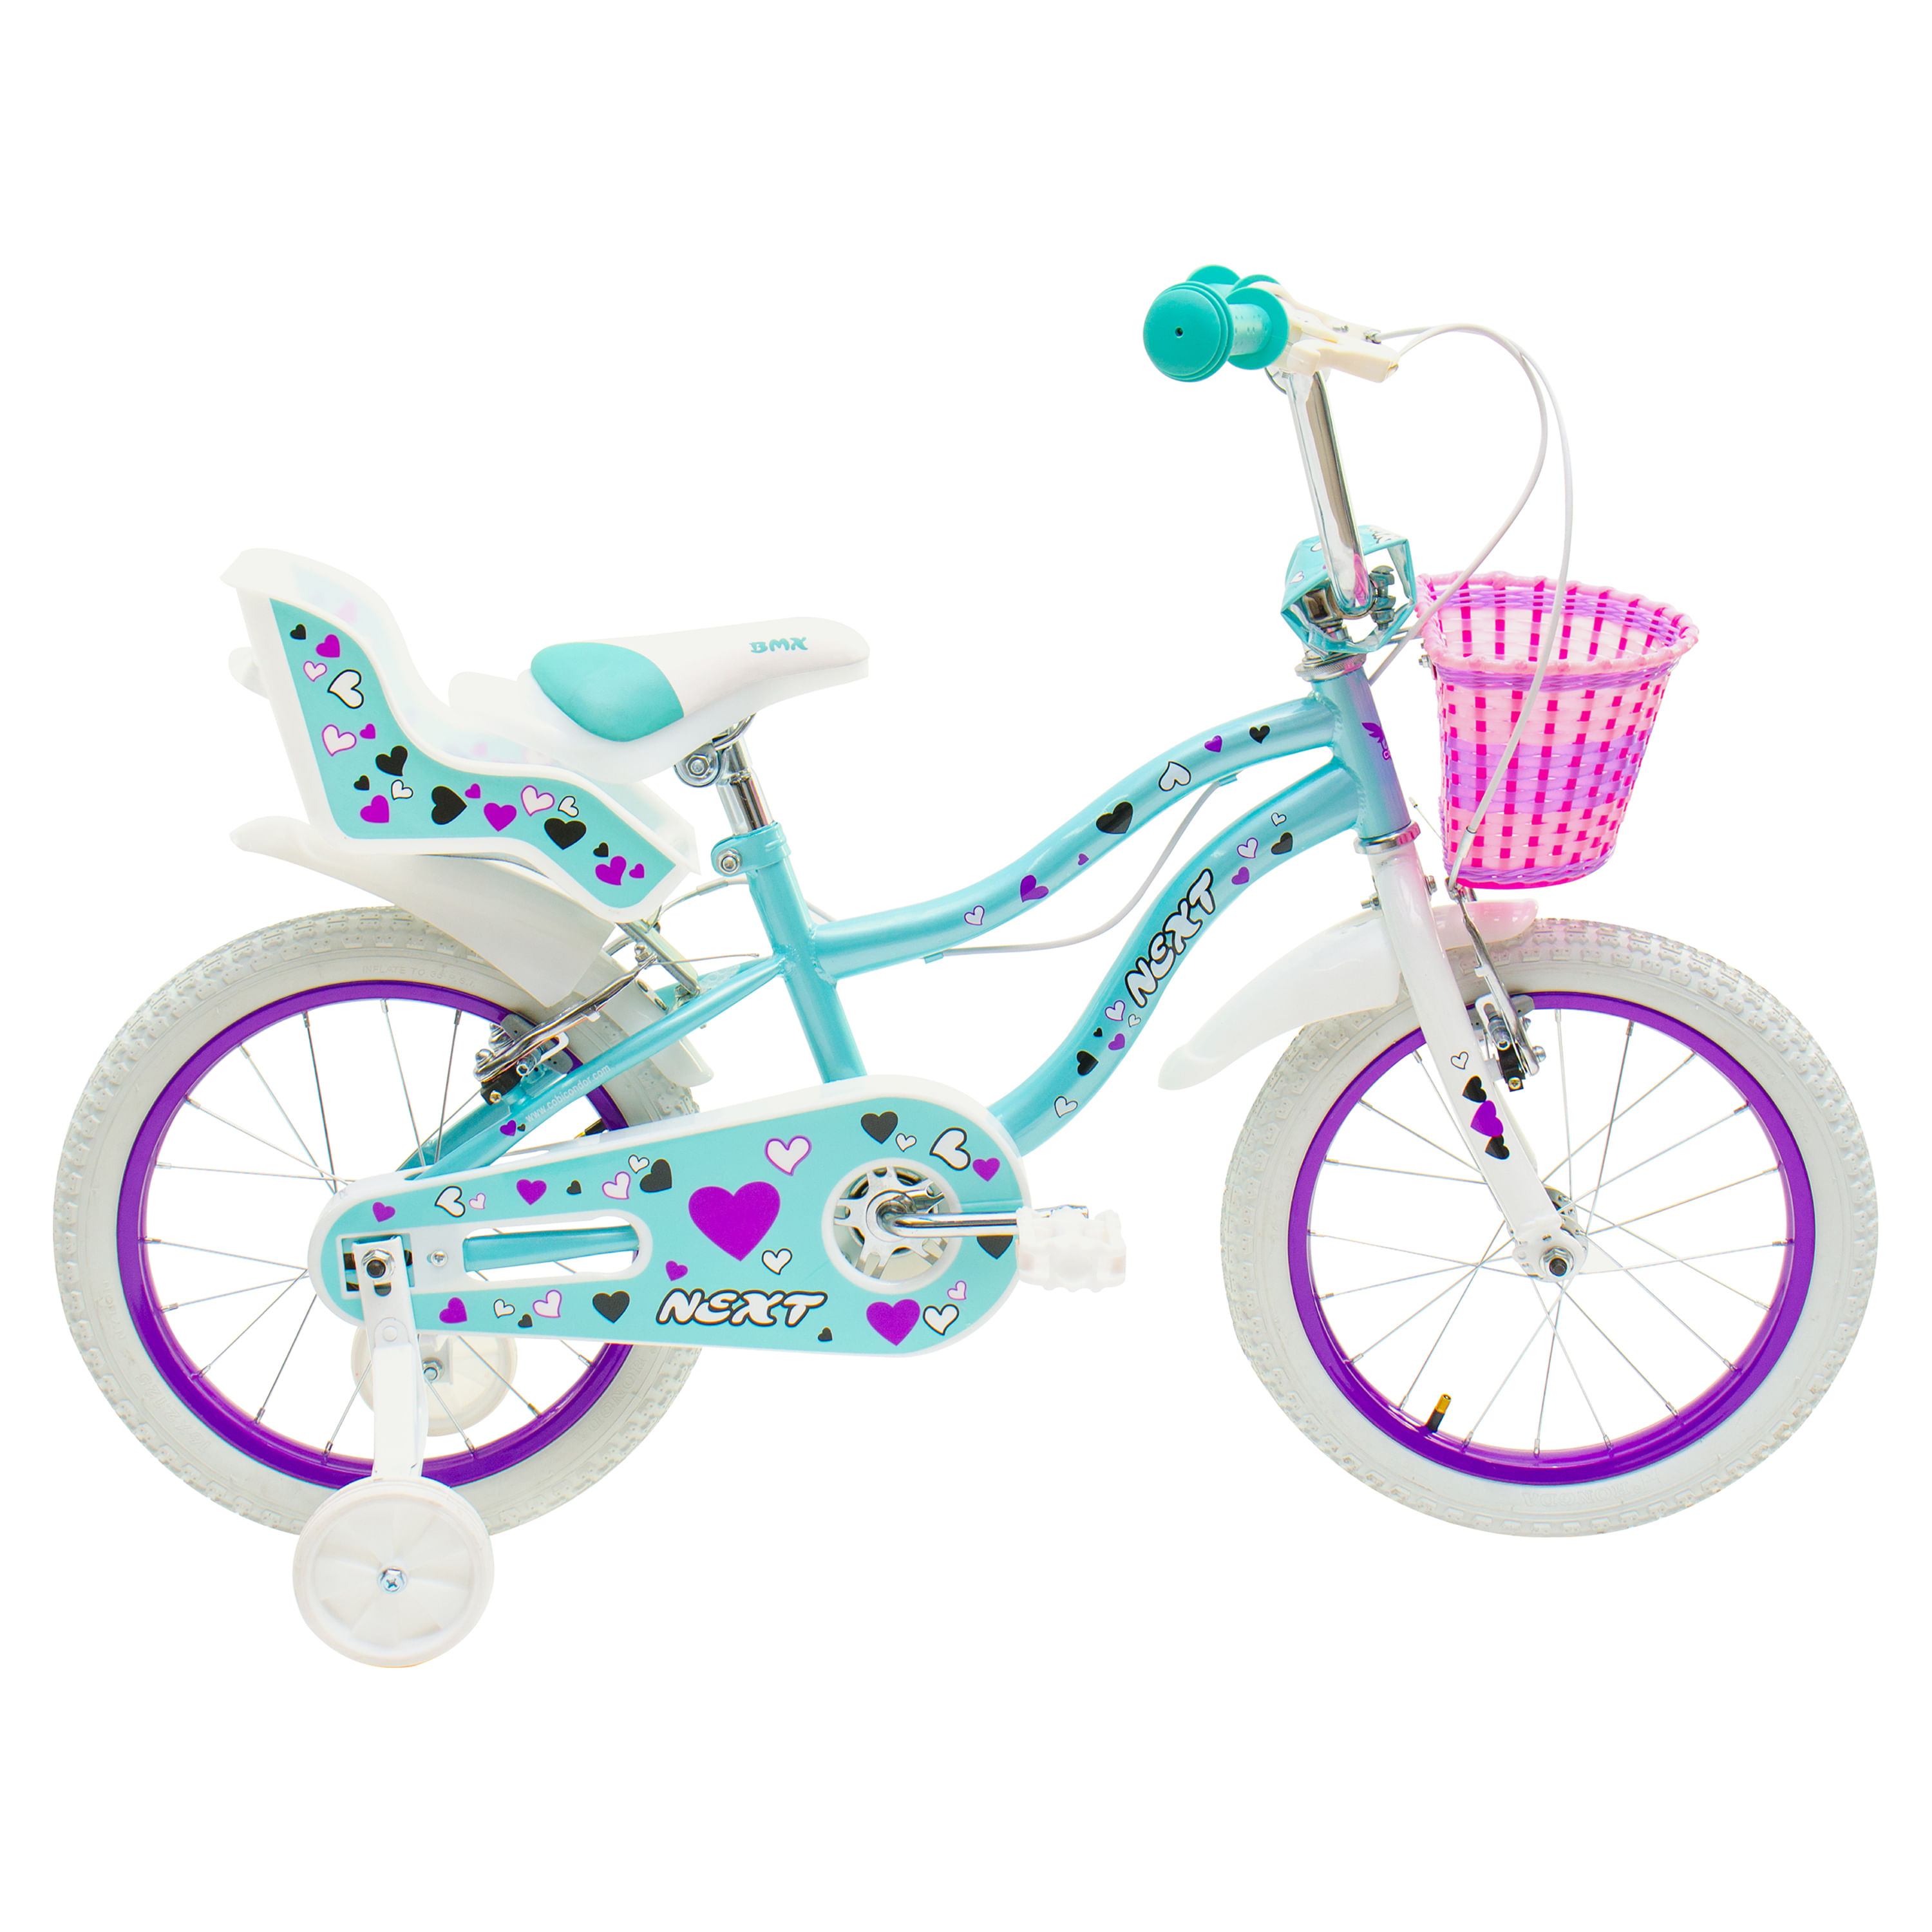 Estas son las mejores bicicletas para una niña de 8 años